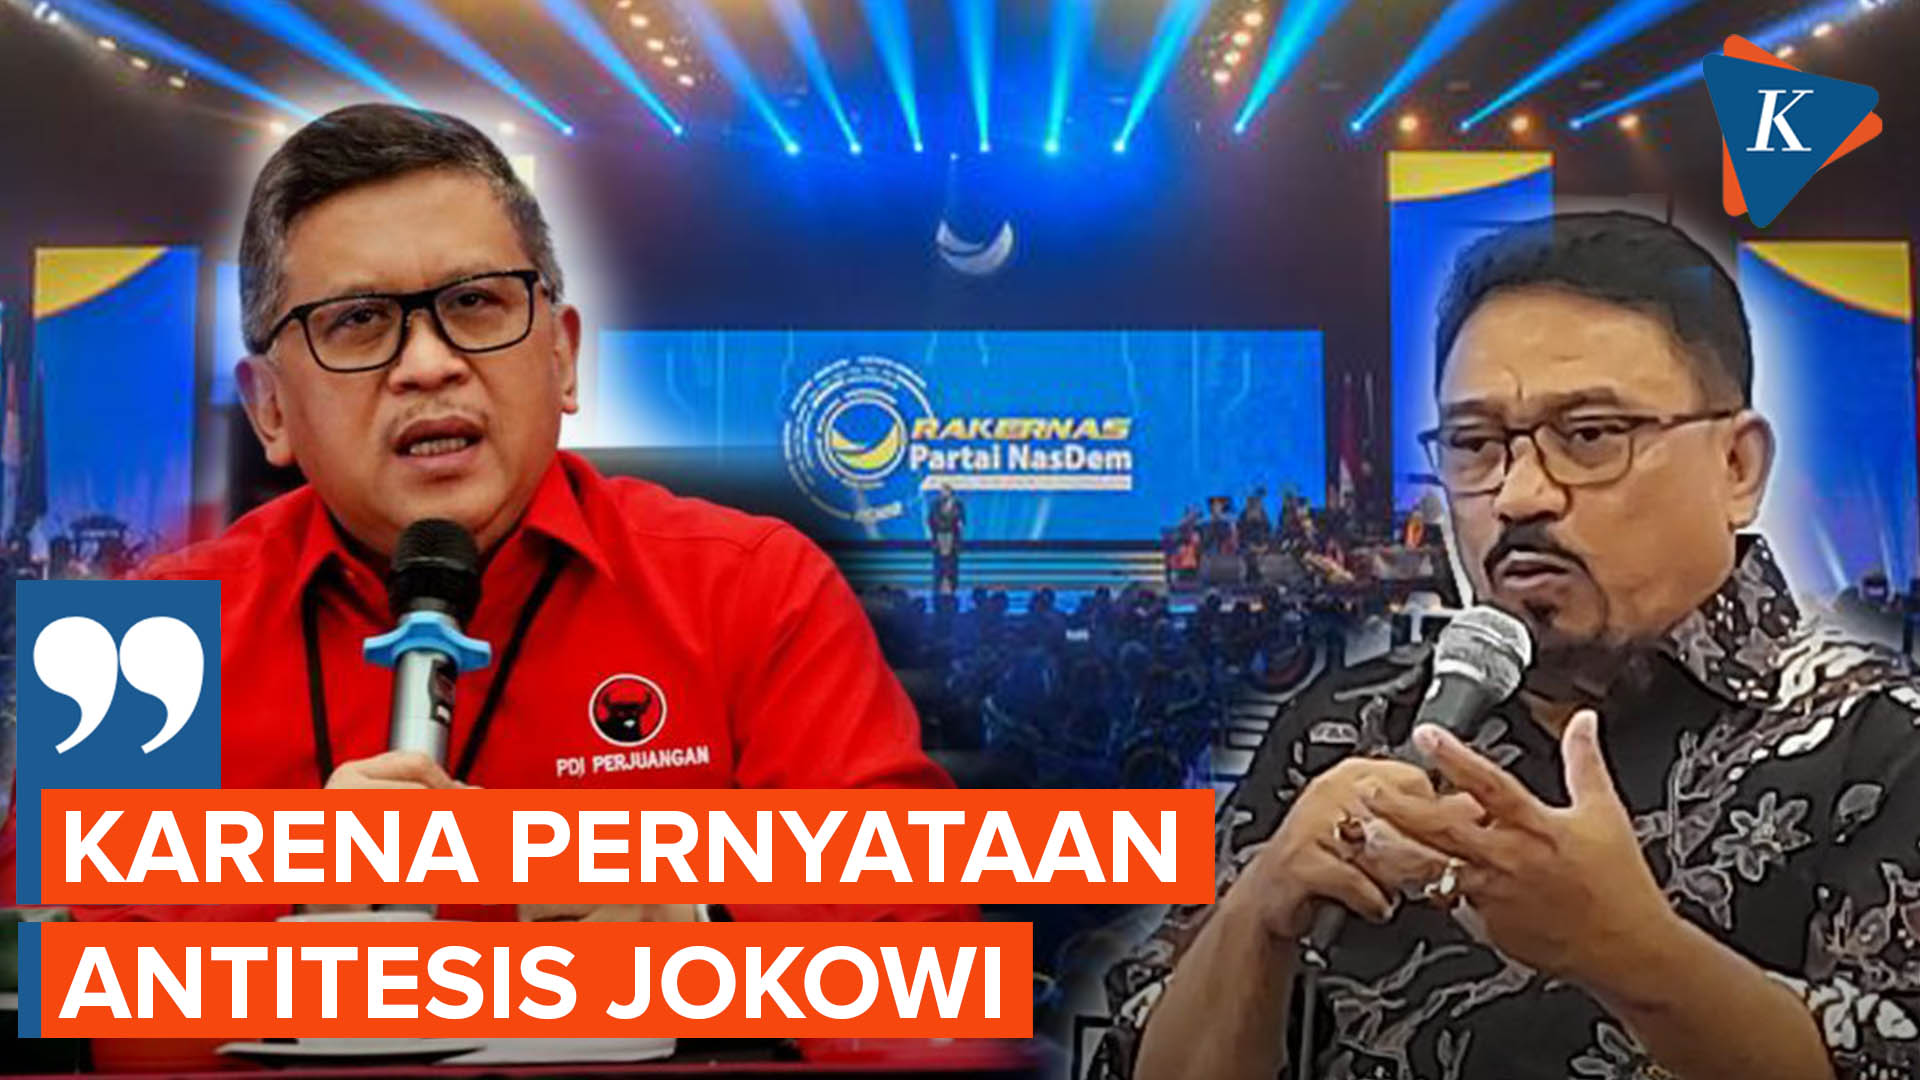 Hasto Ungkap Alasannya Getol Serang Nasdem karena Pernyataan Antitesis Jokowi